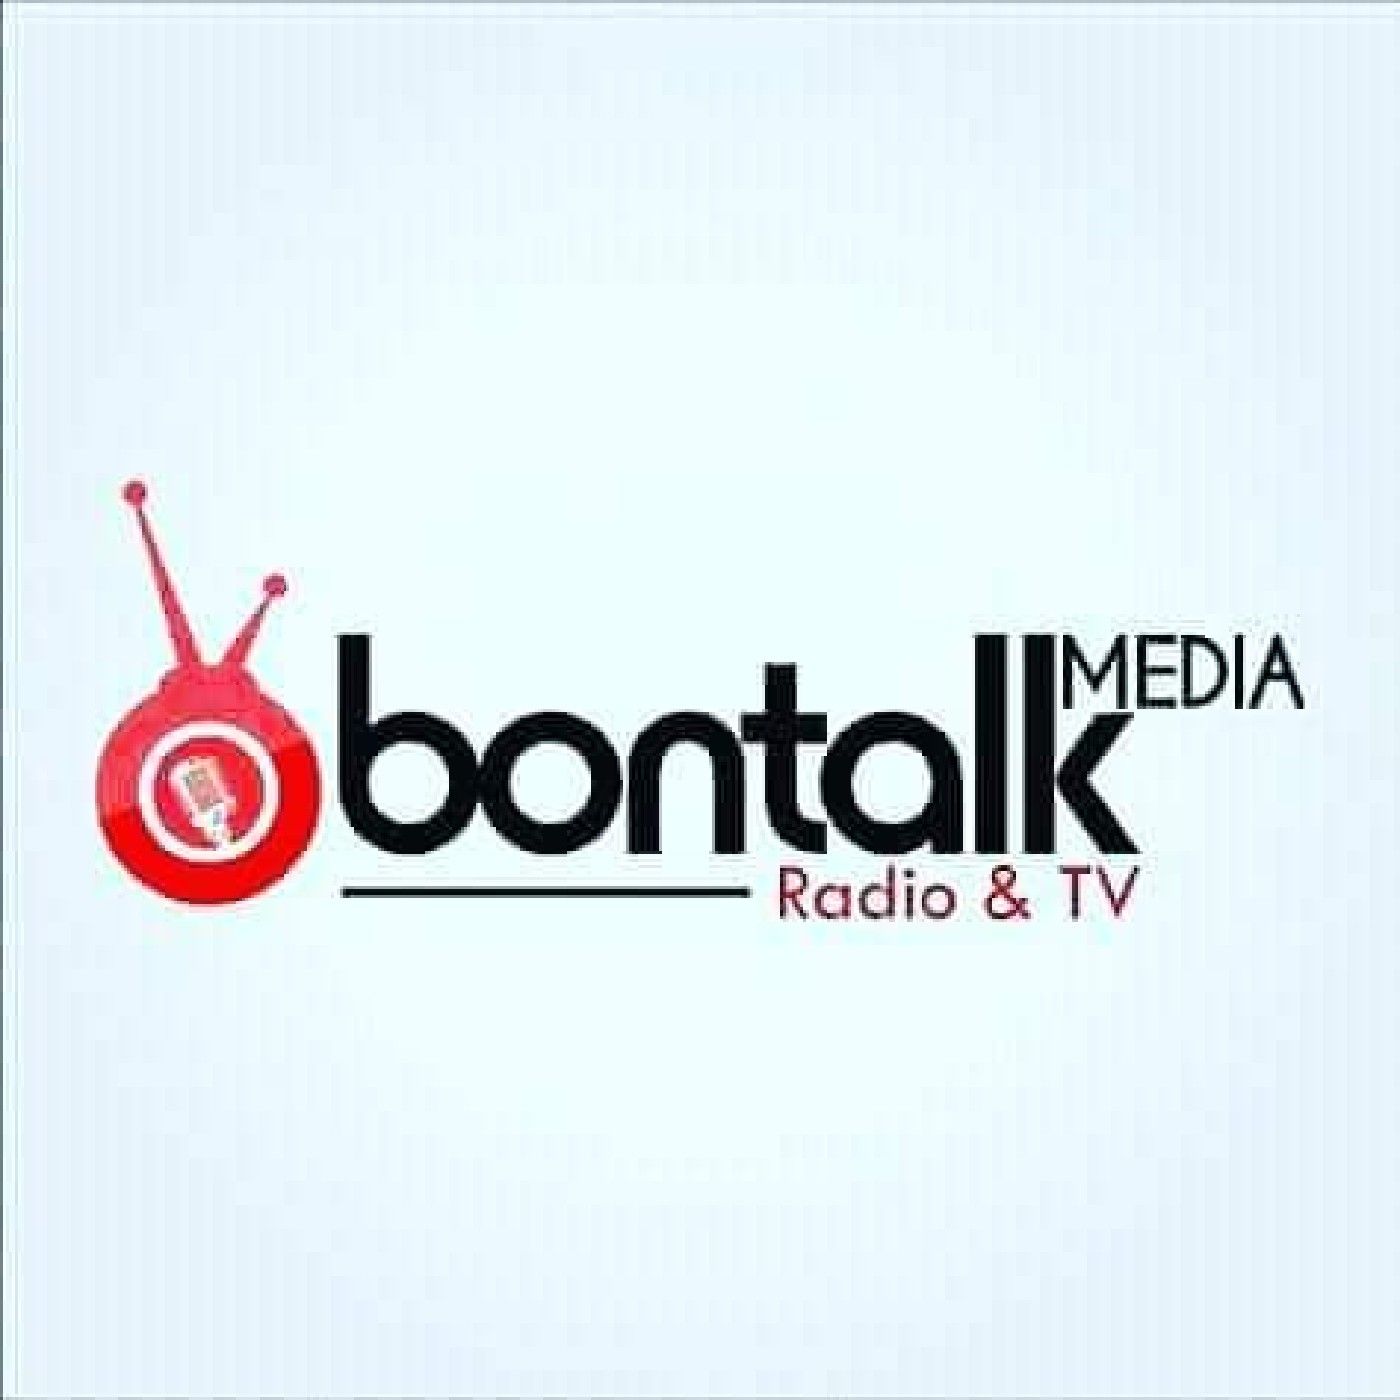 BonTalkMedia Radio